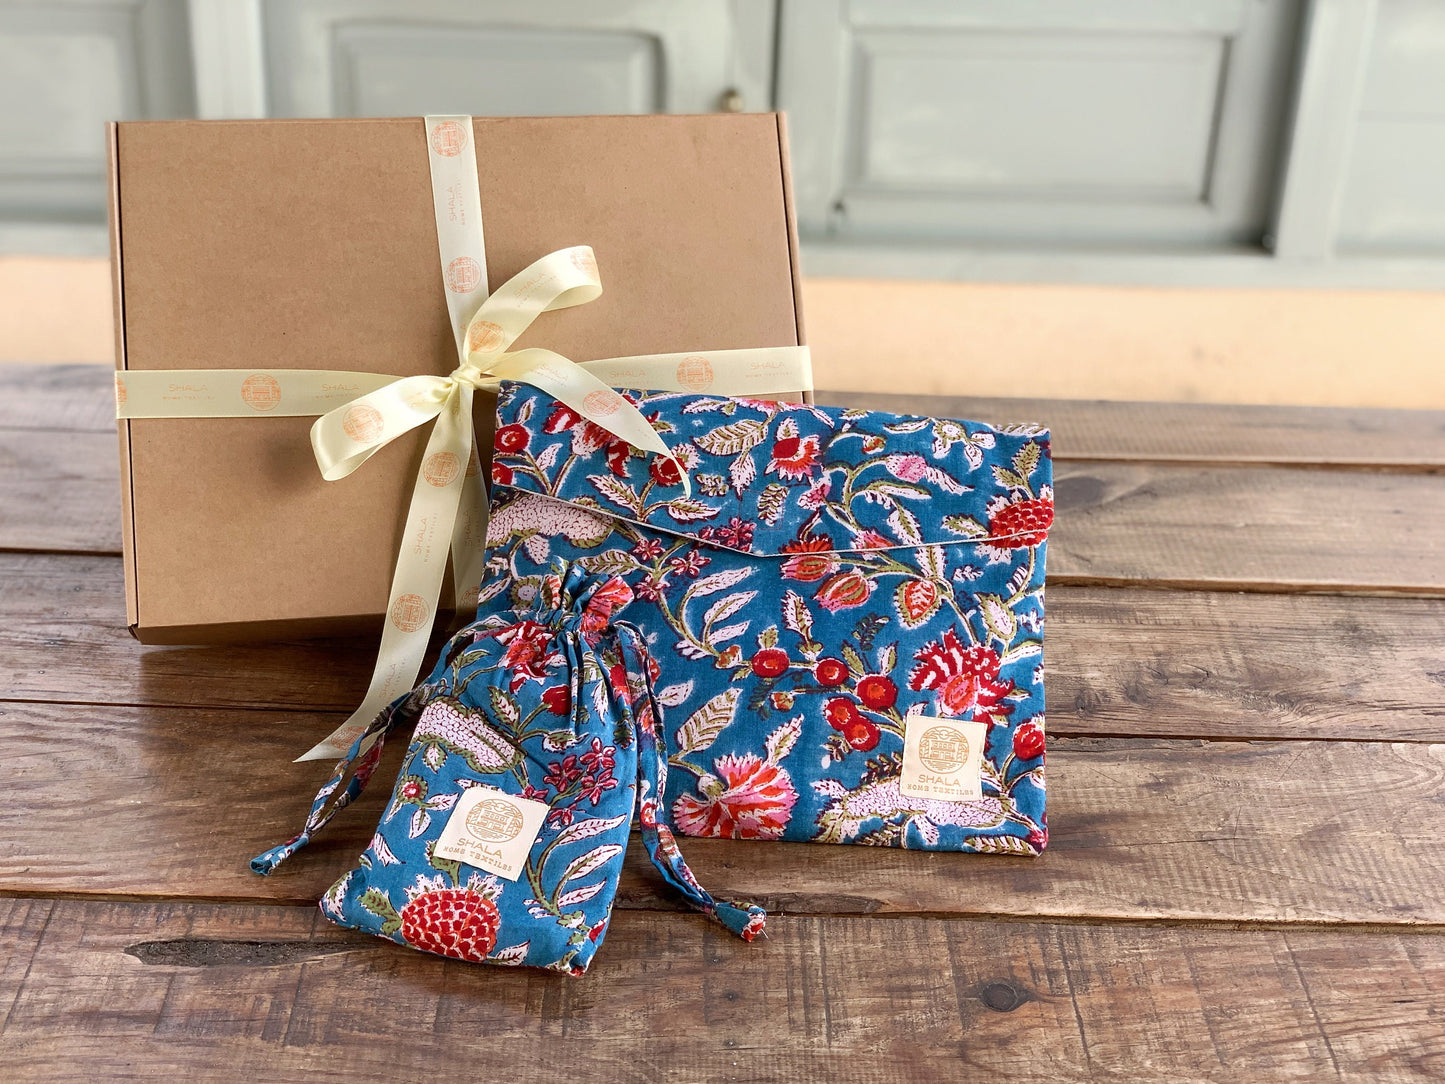 SET regalo · Pijama manga/pantalón corto y zapatillas a juego · Algodón puro estampado block print artesanal en India · Azul flores rojo